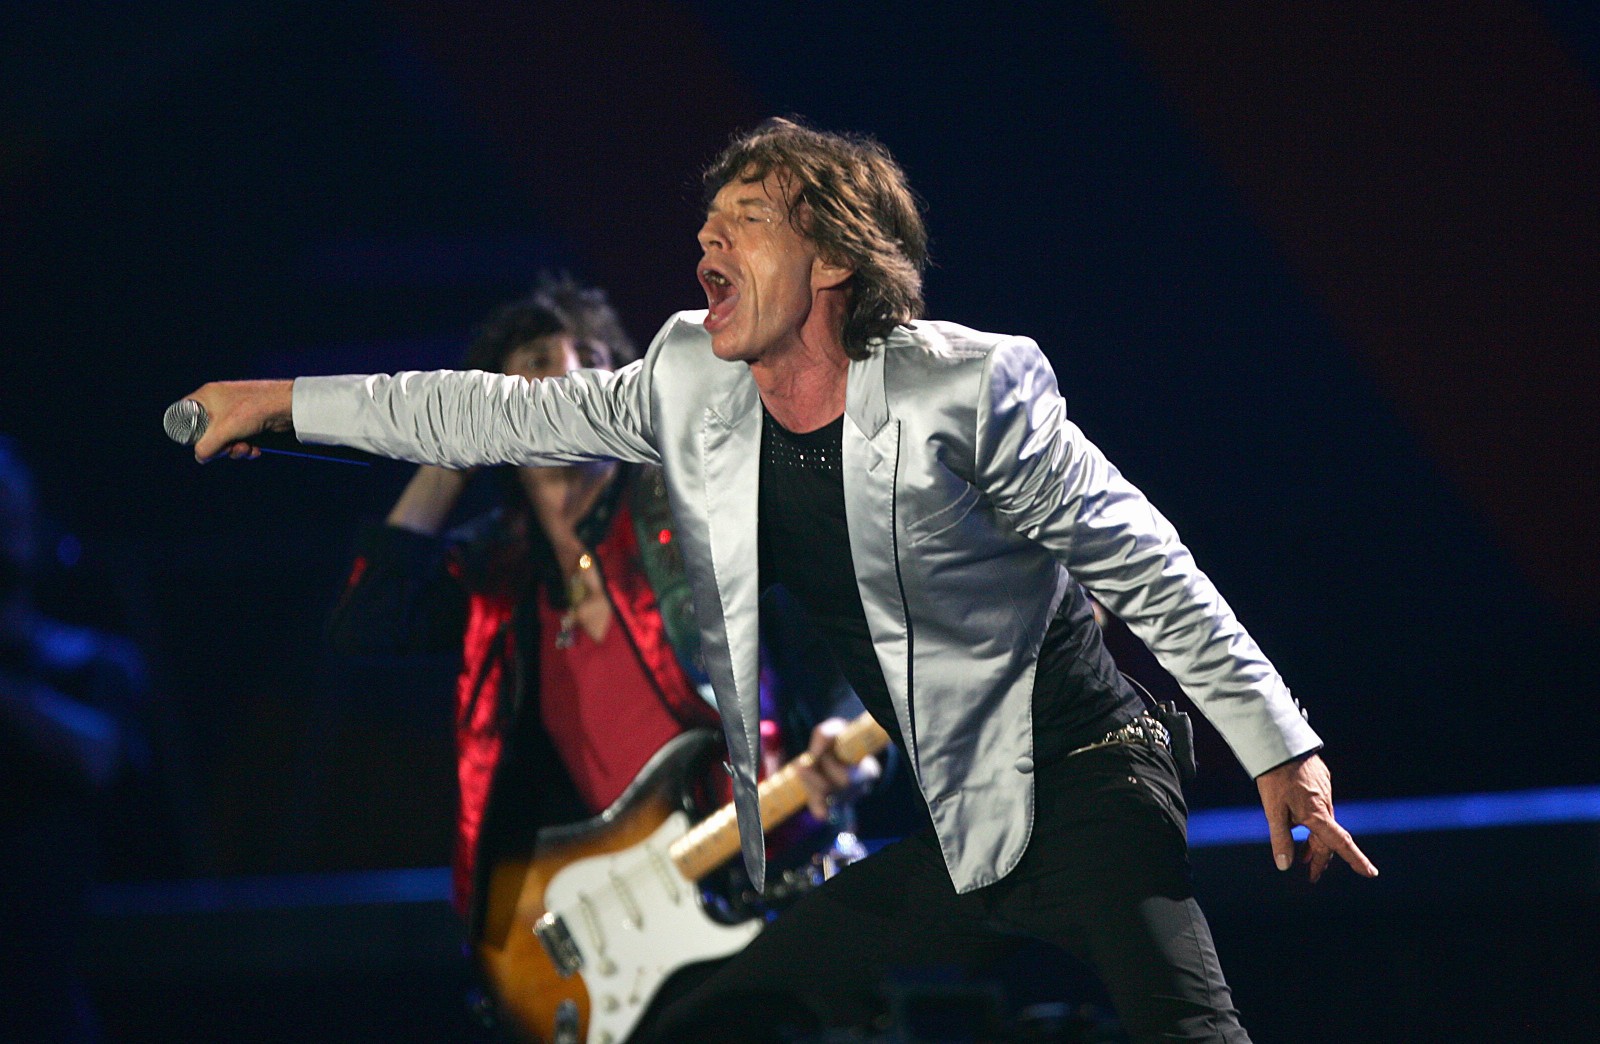 Mick Jagger canta durante o show dos Rolling Stones na Praia de Copacabana, em 2006. — Foto: Ivo Gonzalez